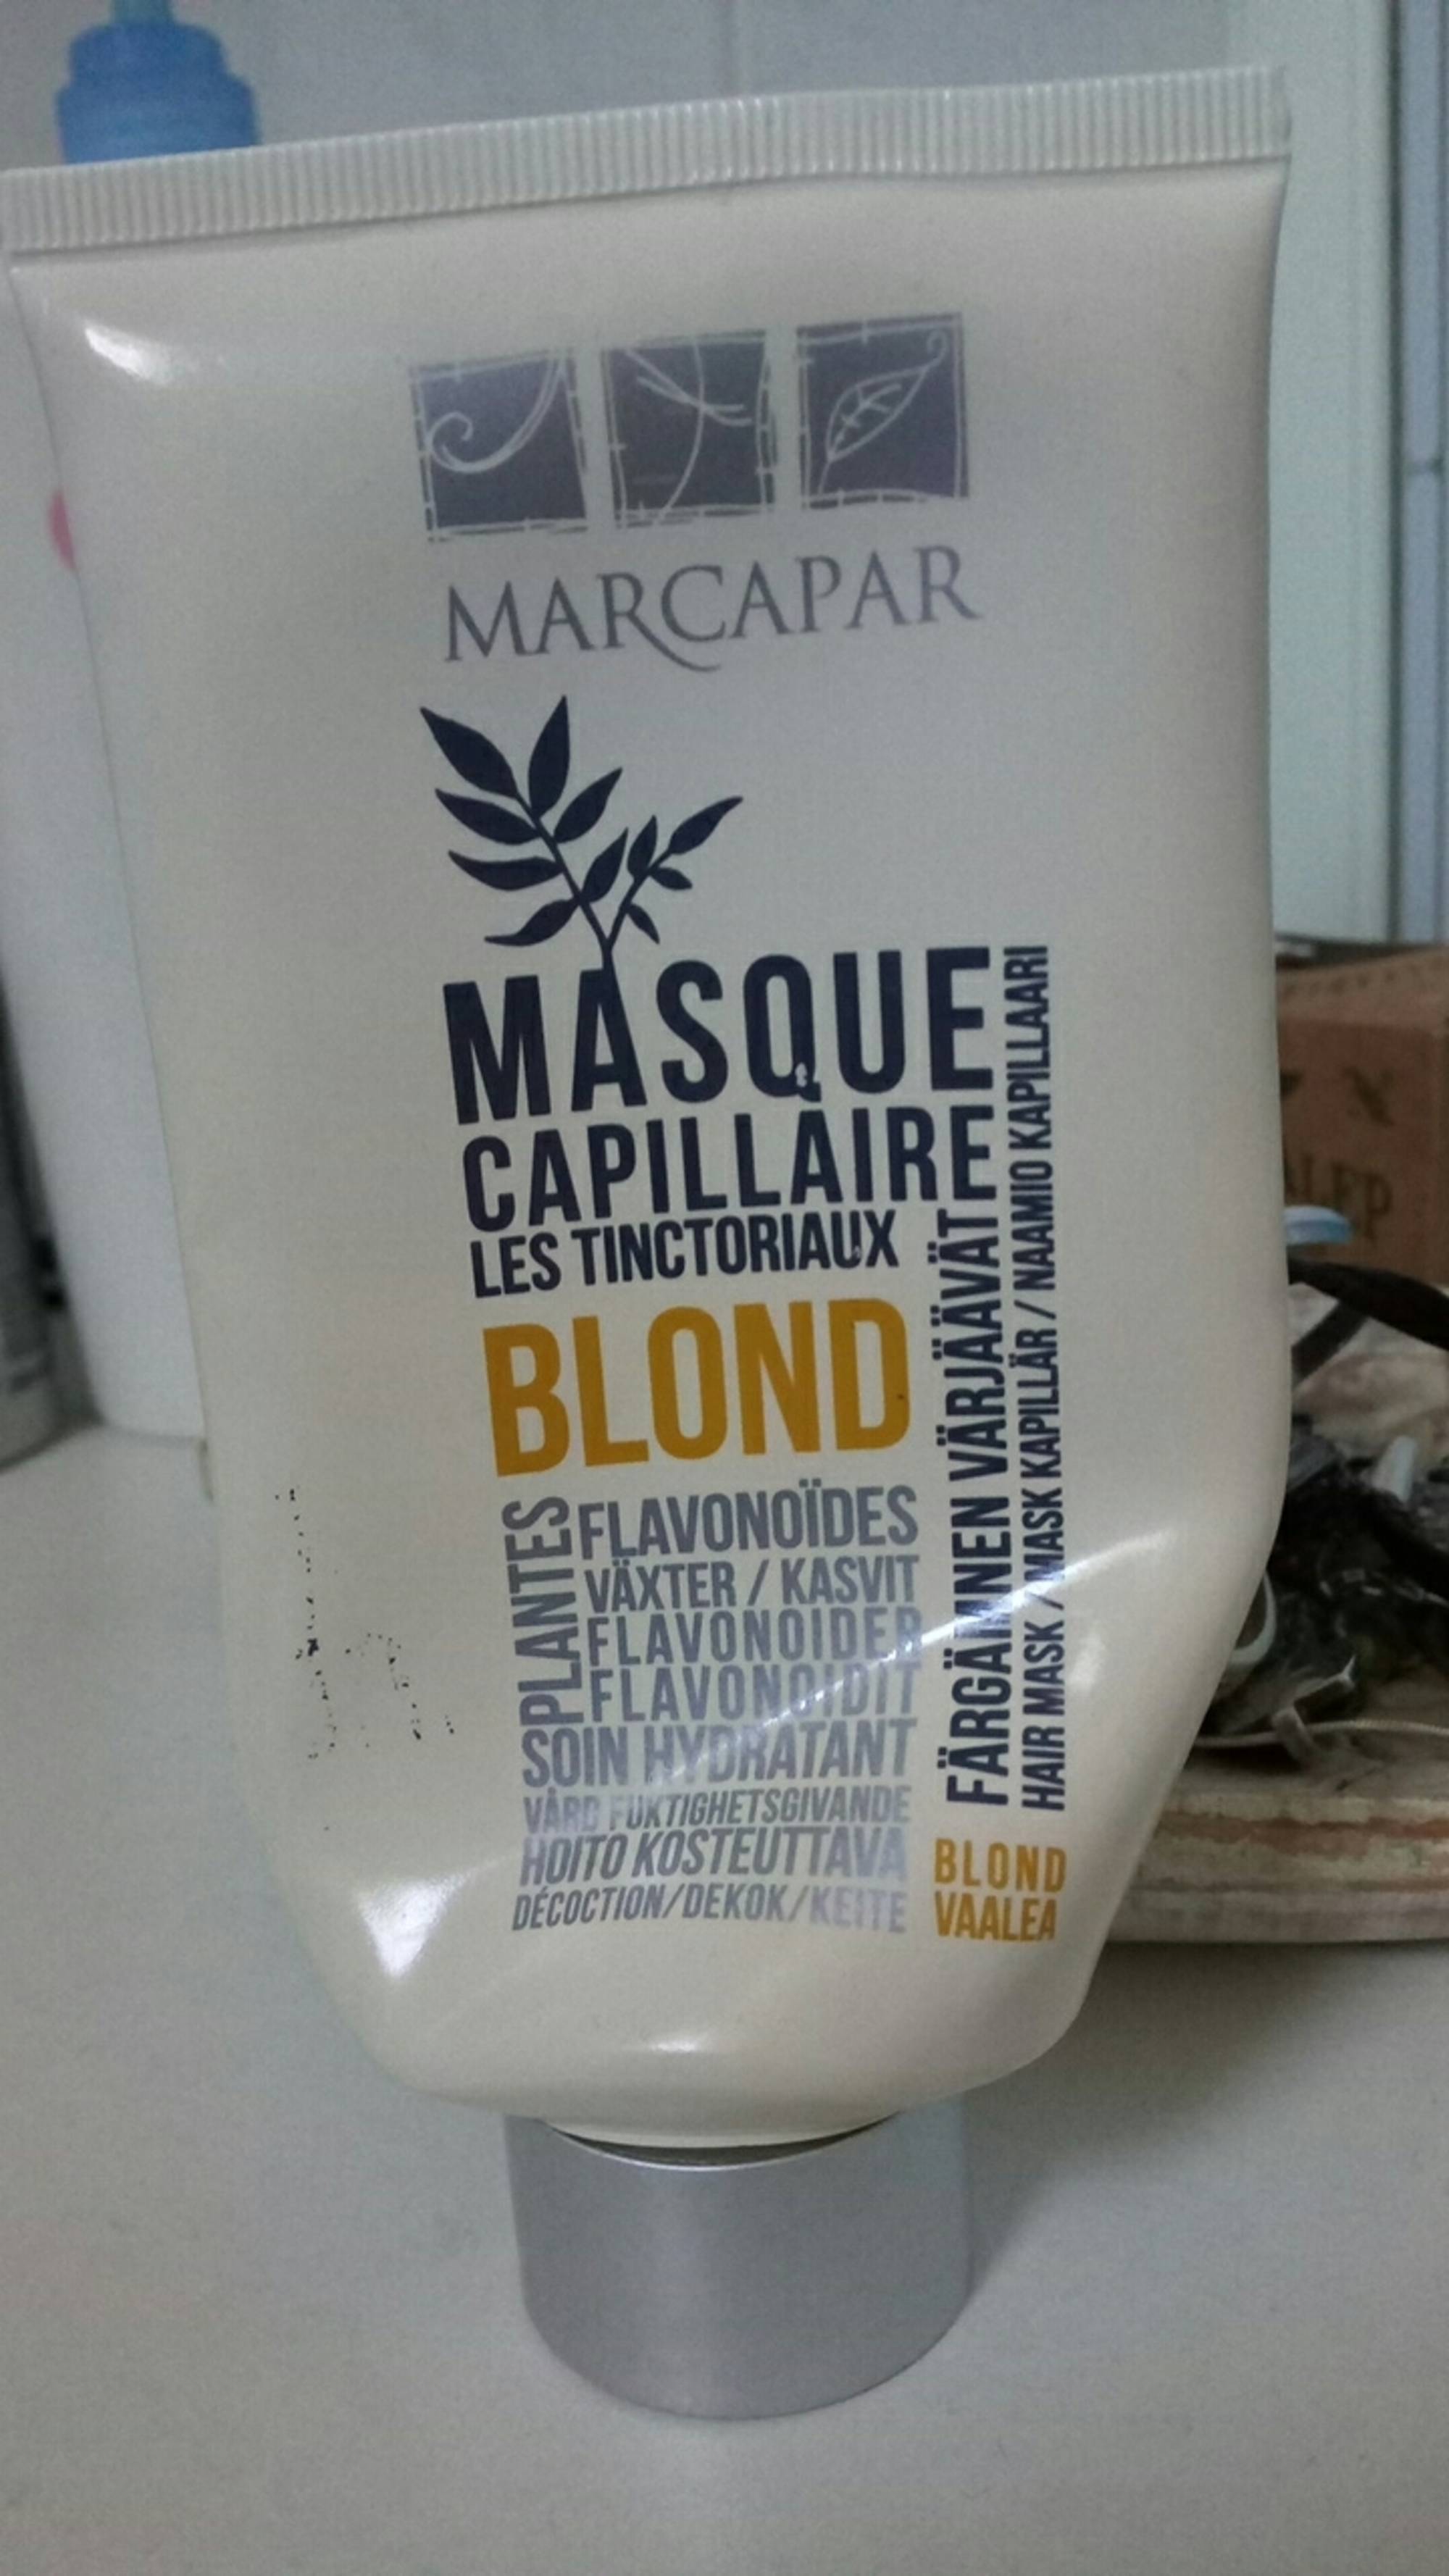 MARCAPAR - Blond - Masque capillaire